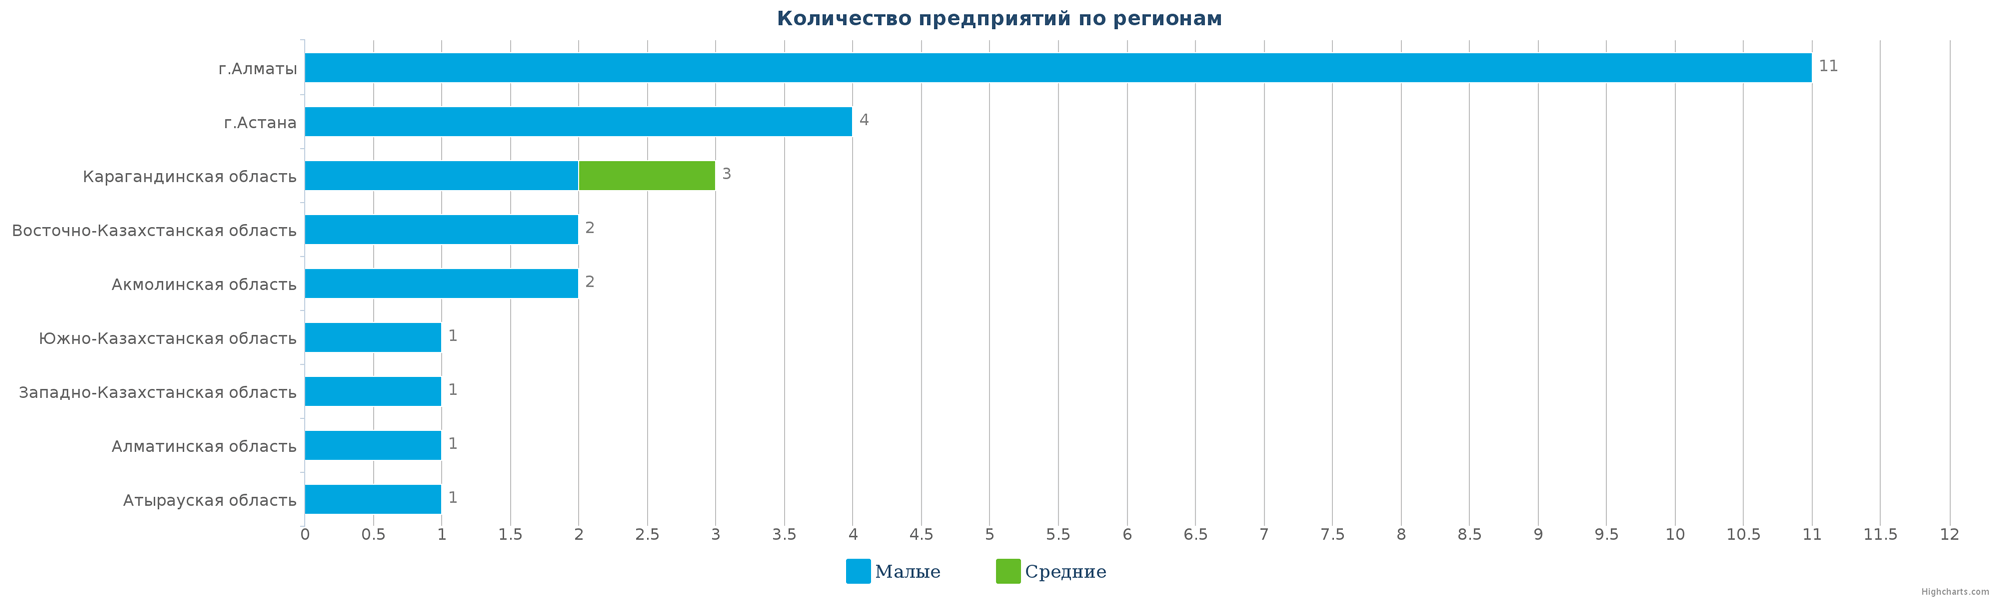 Количество новых производственных организаций по регионам Казахстана